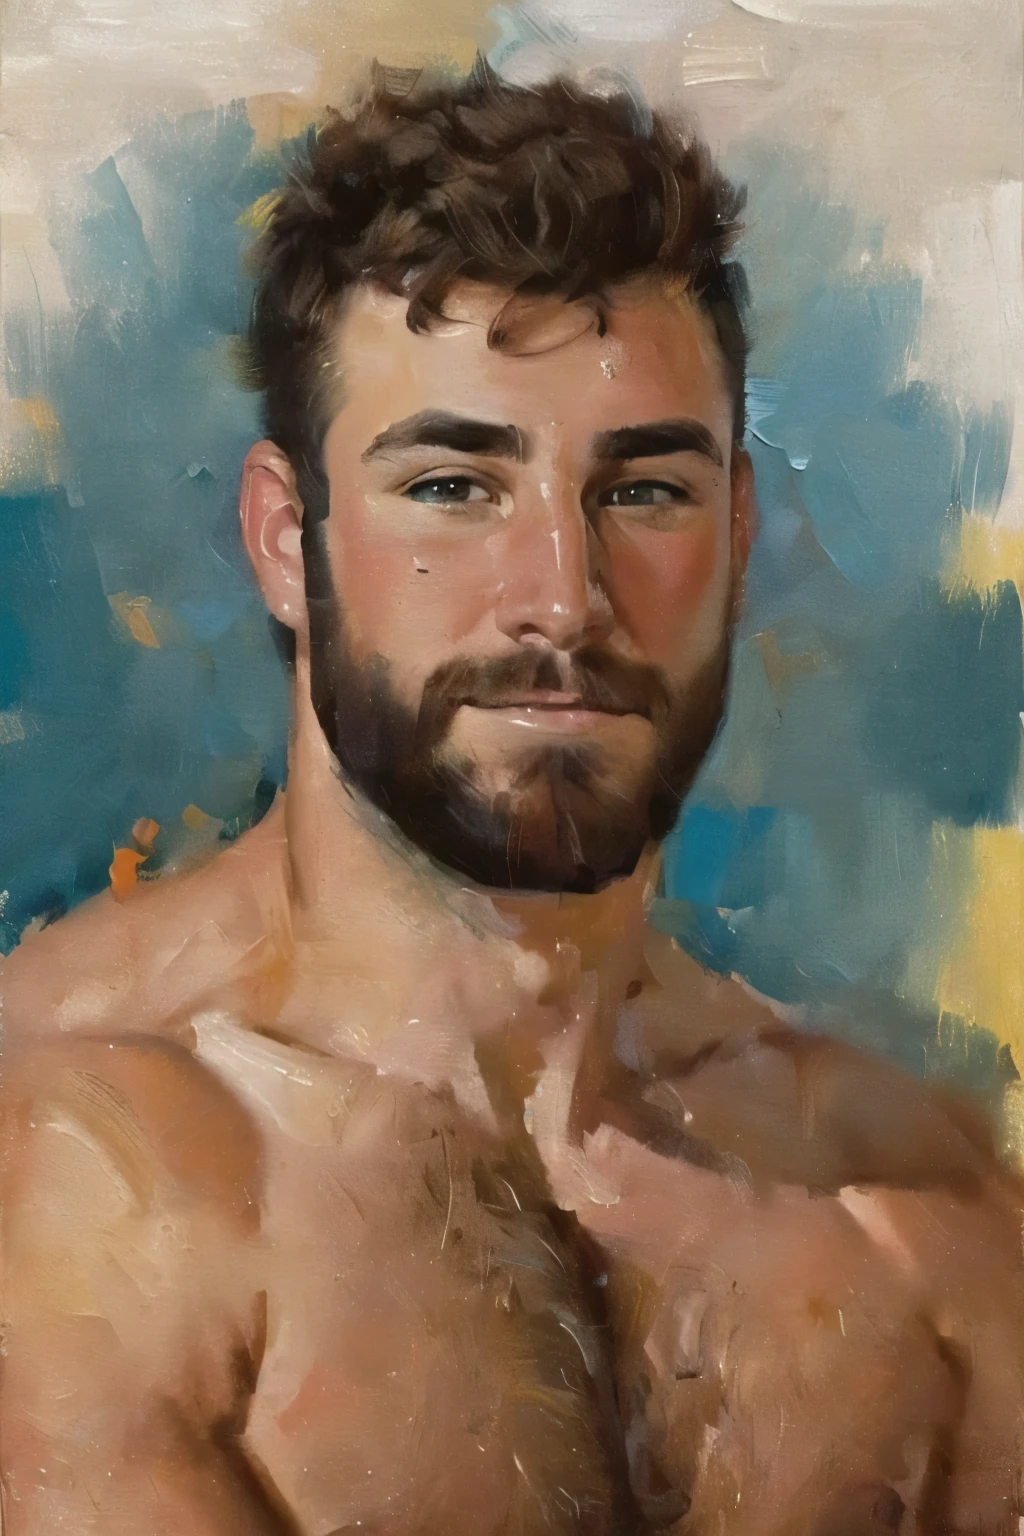 (bichu, Ölgemälde, Impressionismus) von (ein Mann), (Betrachter betrachten), (Kopfschuss:1.7) (Porträt:1.7),
Sehr detailliertes männliches Gesicht, heroisch, detaillierte realistische offene blaugrüne Augen, (muskulös:1.5), (Große Muskeln), (massive Brustmuskeln), (behaarte Brustmuskeln), schmale Taille und Hüfte, (Schokoladenbraunes Haar), (leichtes Lächeln), (mit nacktem Oberkörper) (oben ohne männlich). sehr detailliert, gute Qualität, Meisterwerk
